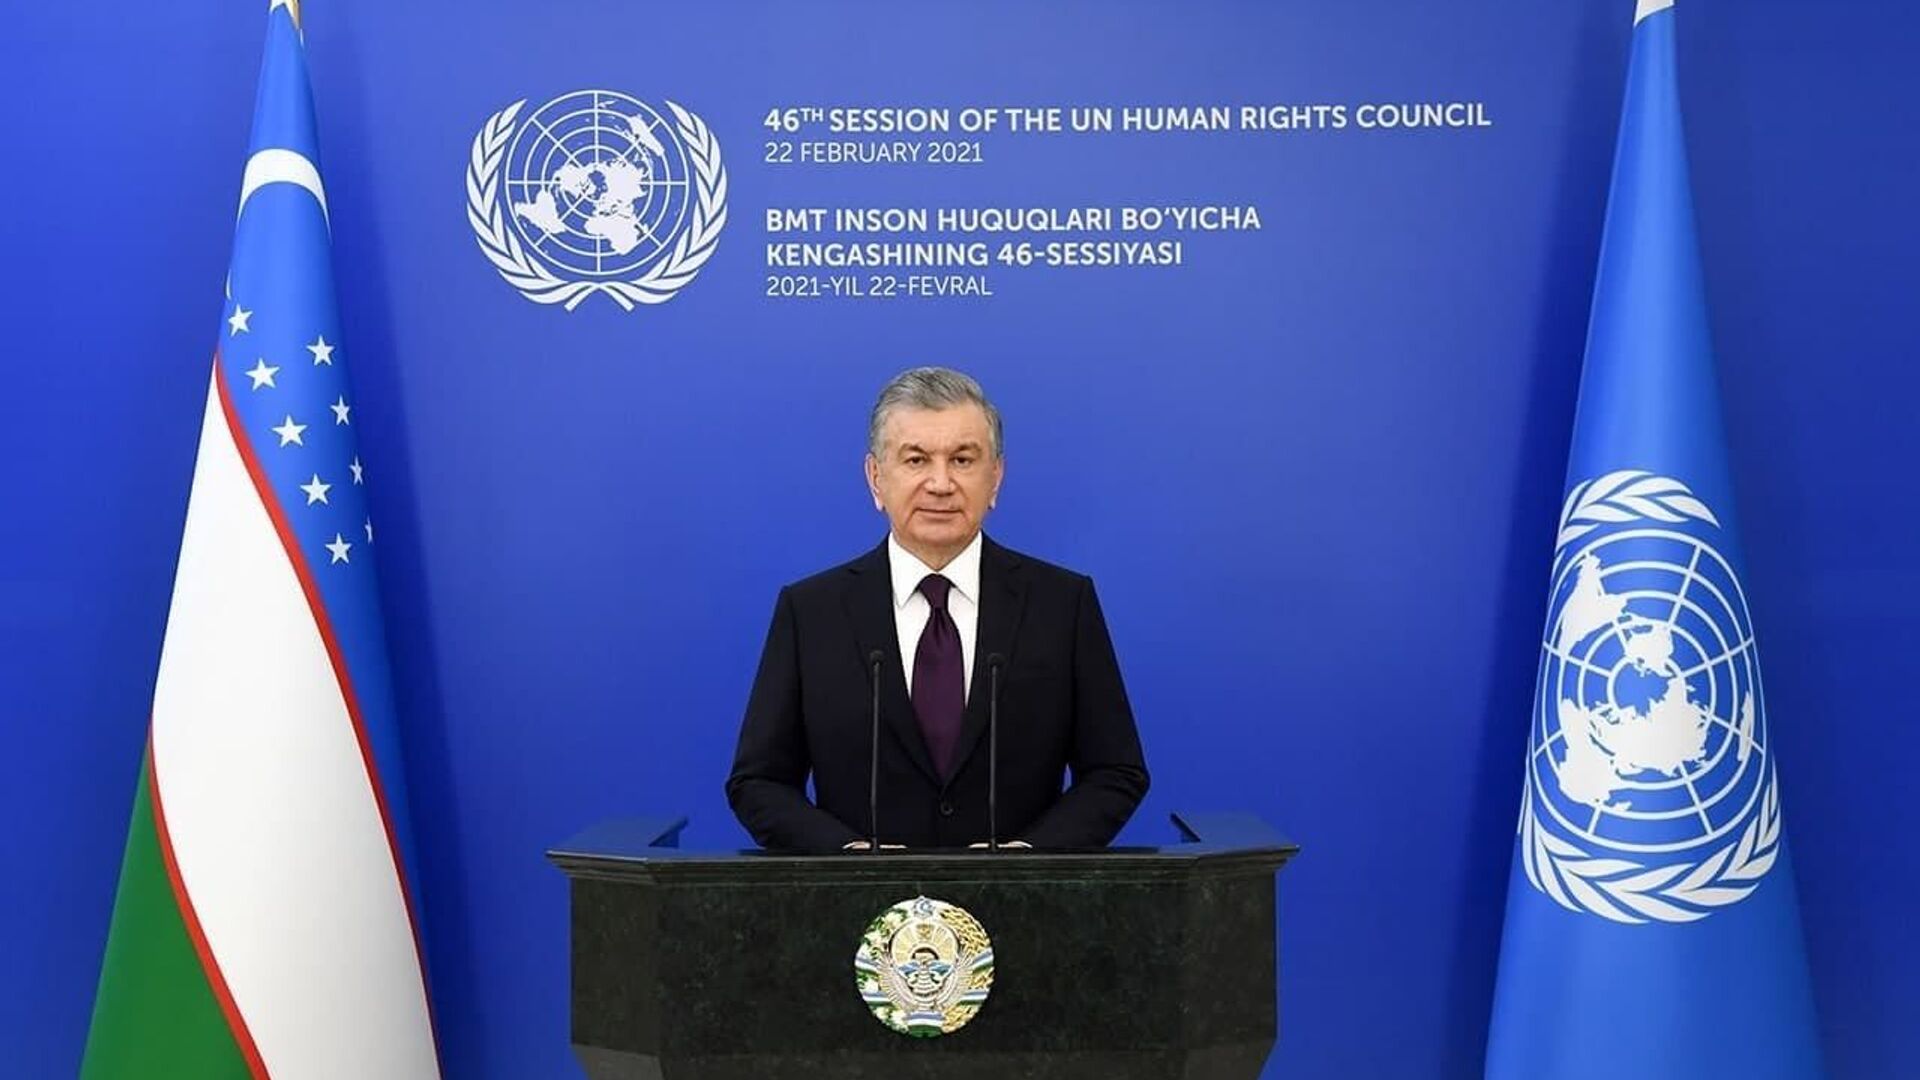 Шавкат Мирзиёев выступил на 46-й сессии Совета по правам человека ООН - Sputnik Узбекистан, 1920, 22.02.2021